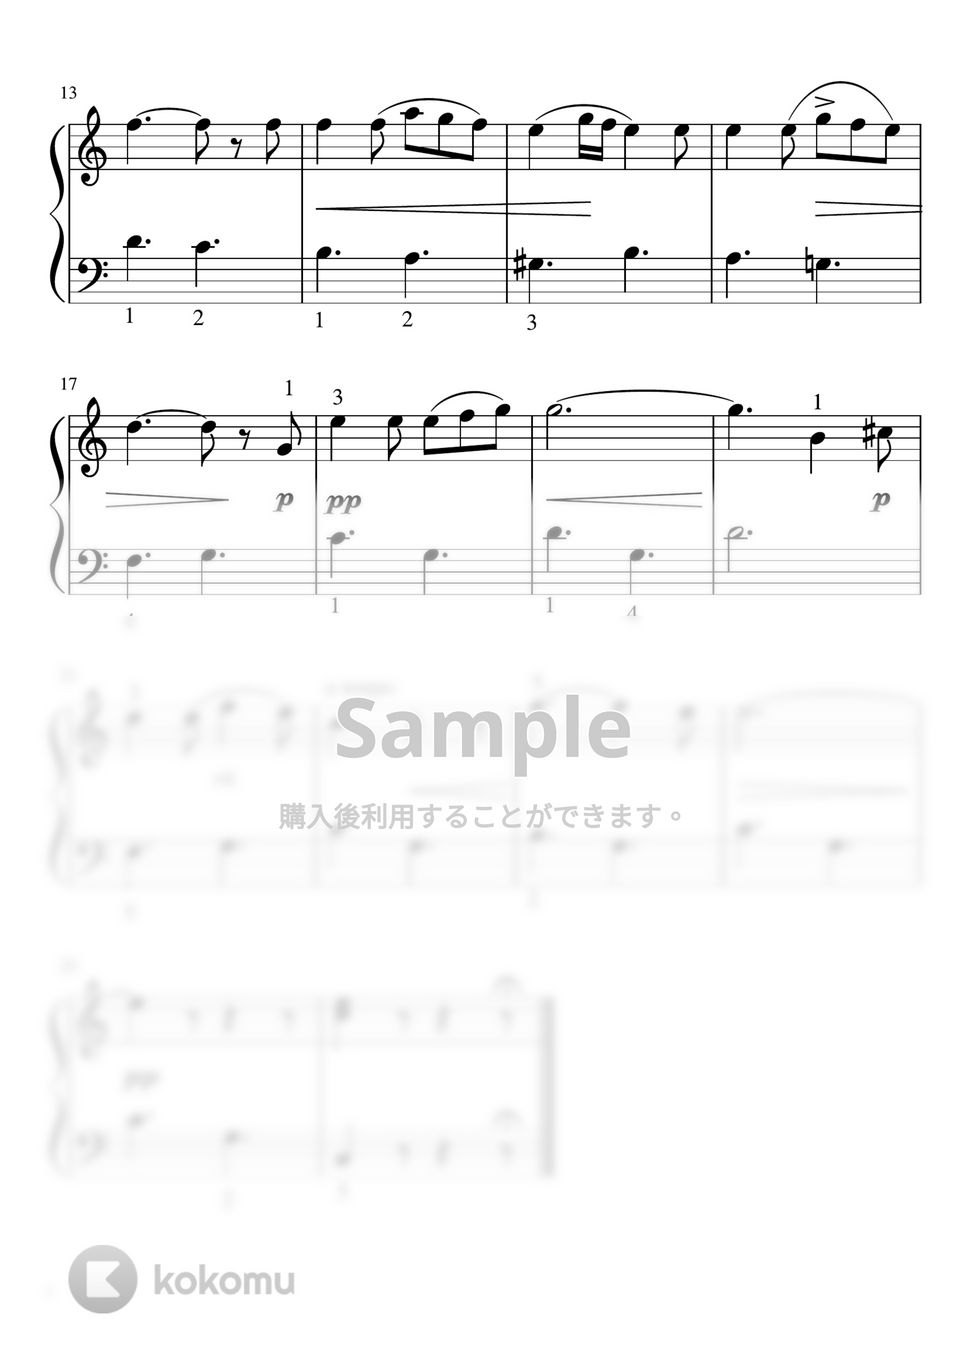 メンデルスゾーン - 歌の翼に (Cdur・ピアノソロ初級) by pfkaori